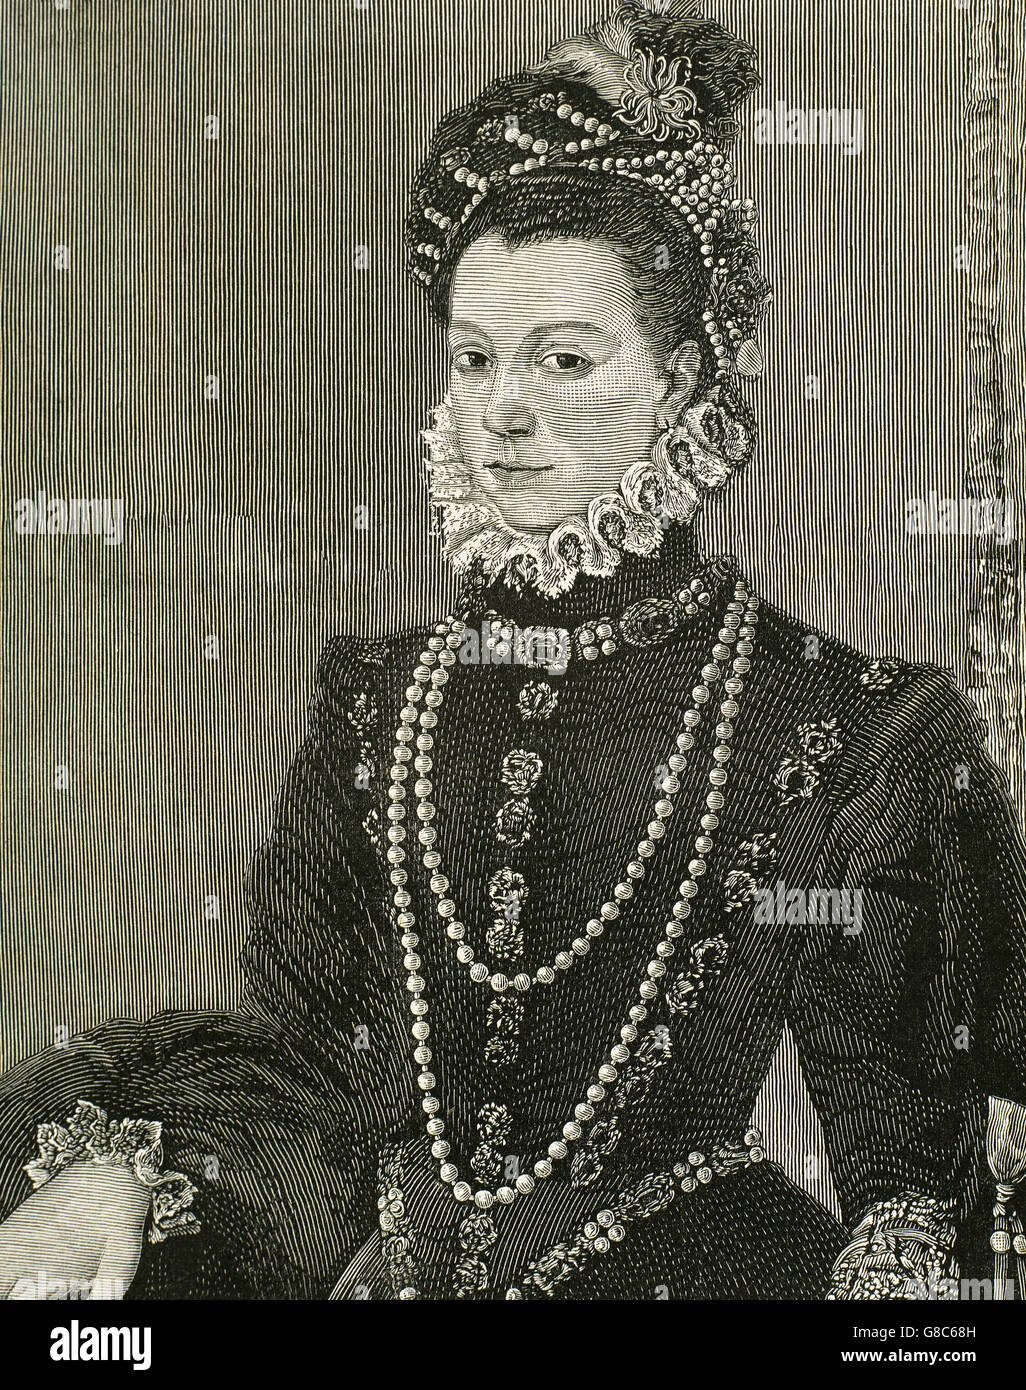 Elisabetta di Valois (1545-1568). Regina spagnola consorte. La Figlia di Enrico II di Francia e Caterina de' Medici. La terza moglie del re Filippo II di Spagna. Ritratto. Incisione. Foto Stock